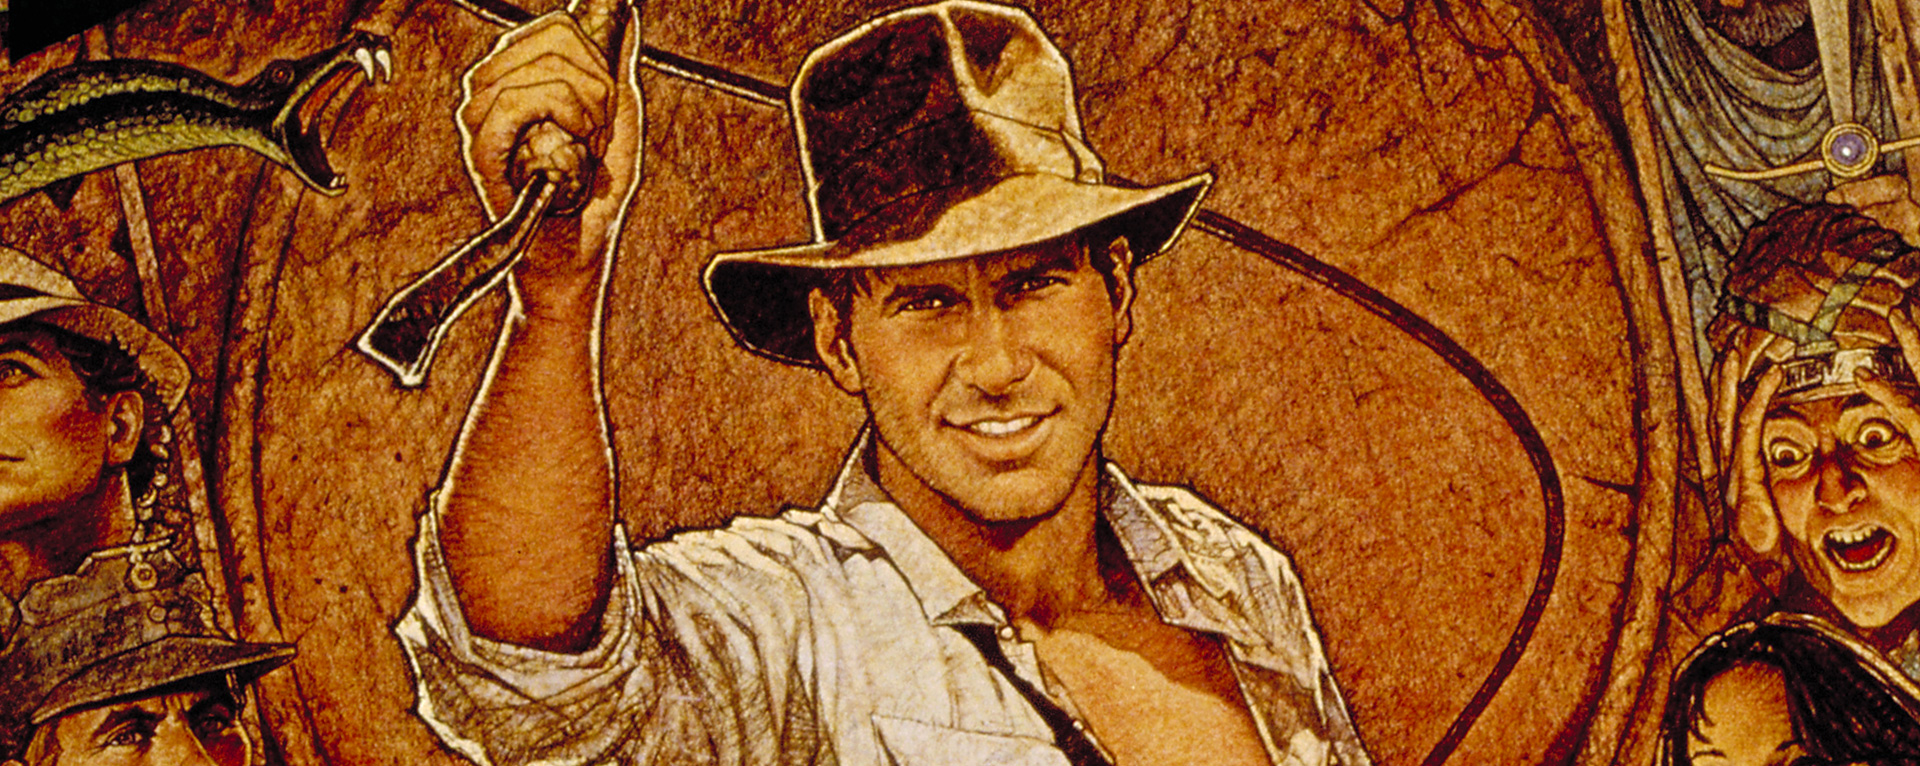 Indiana Jones Và Chiếc Rương Thánh Tích – Raiders of the Lost Ark (1981) Full HD Vietsub